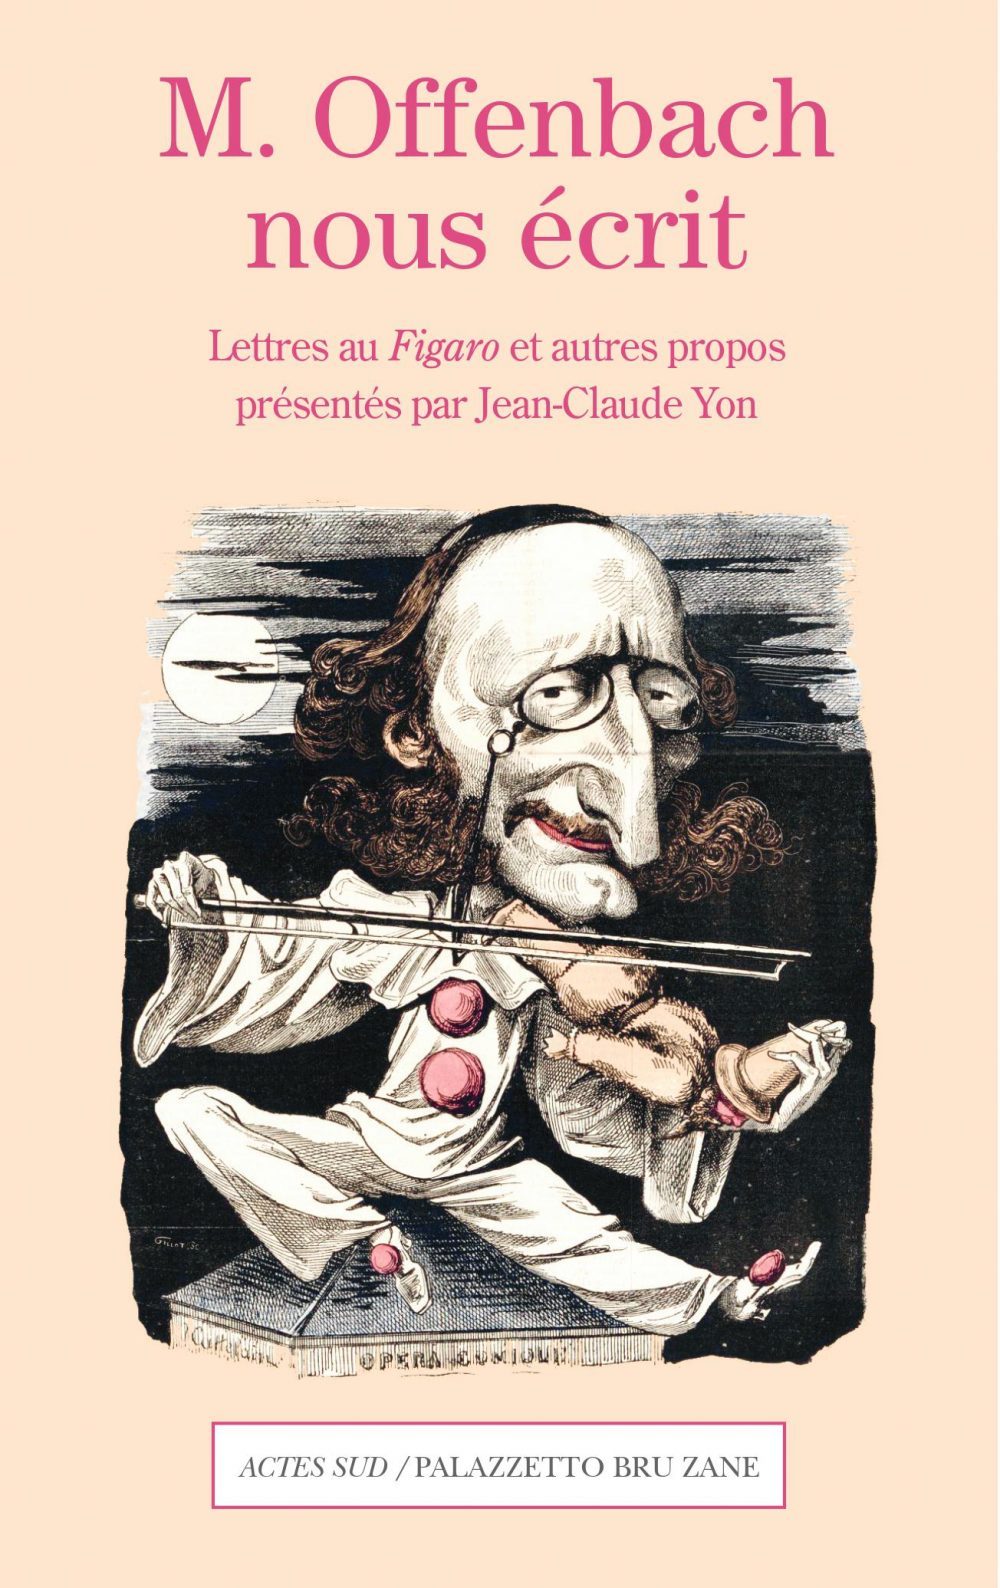 M. Offenbach nous écrit Lettres au Figaro et autres propos: info e acquisto  - Palazzetto Bru Zane